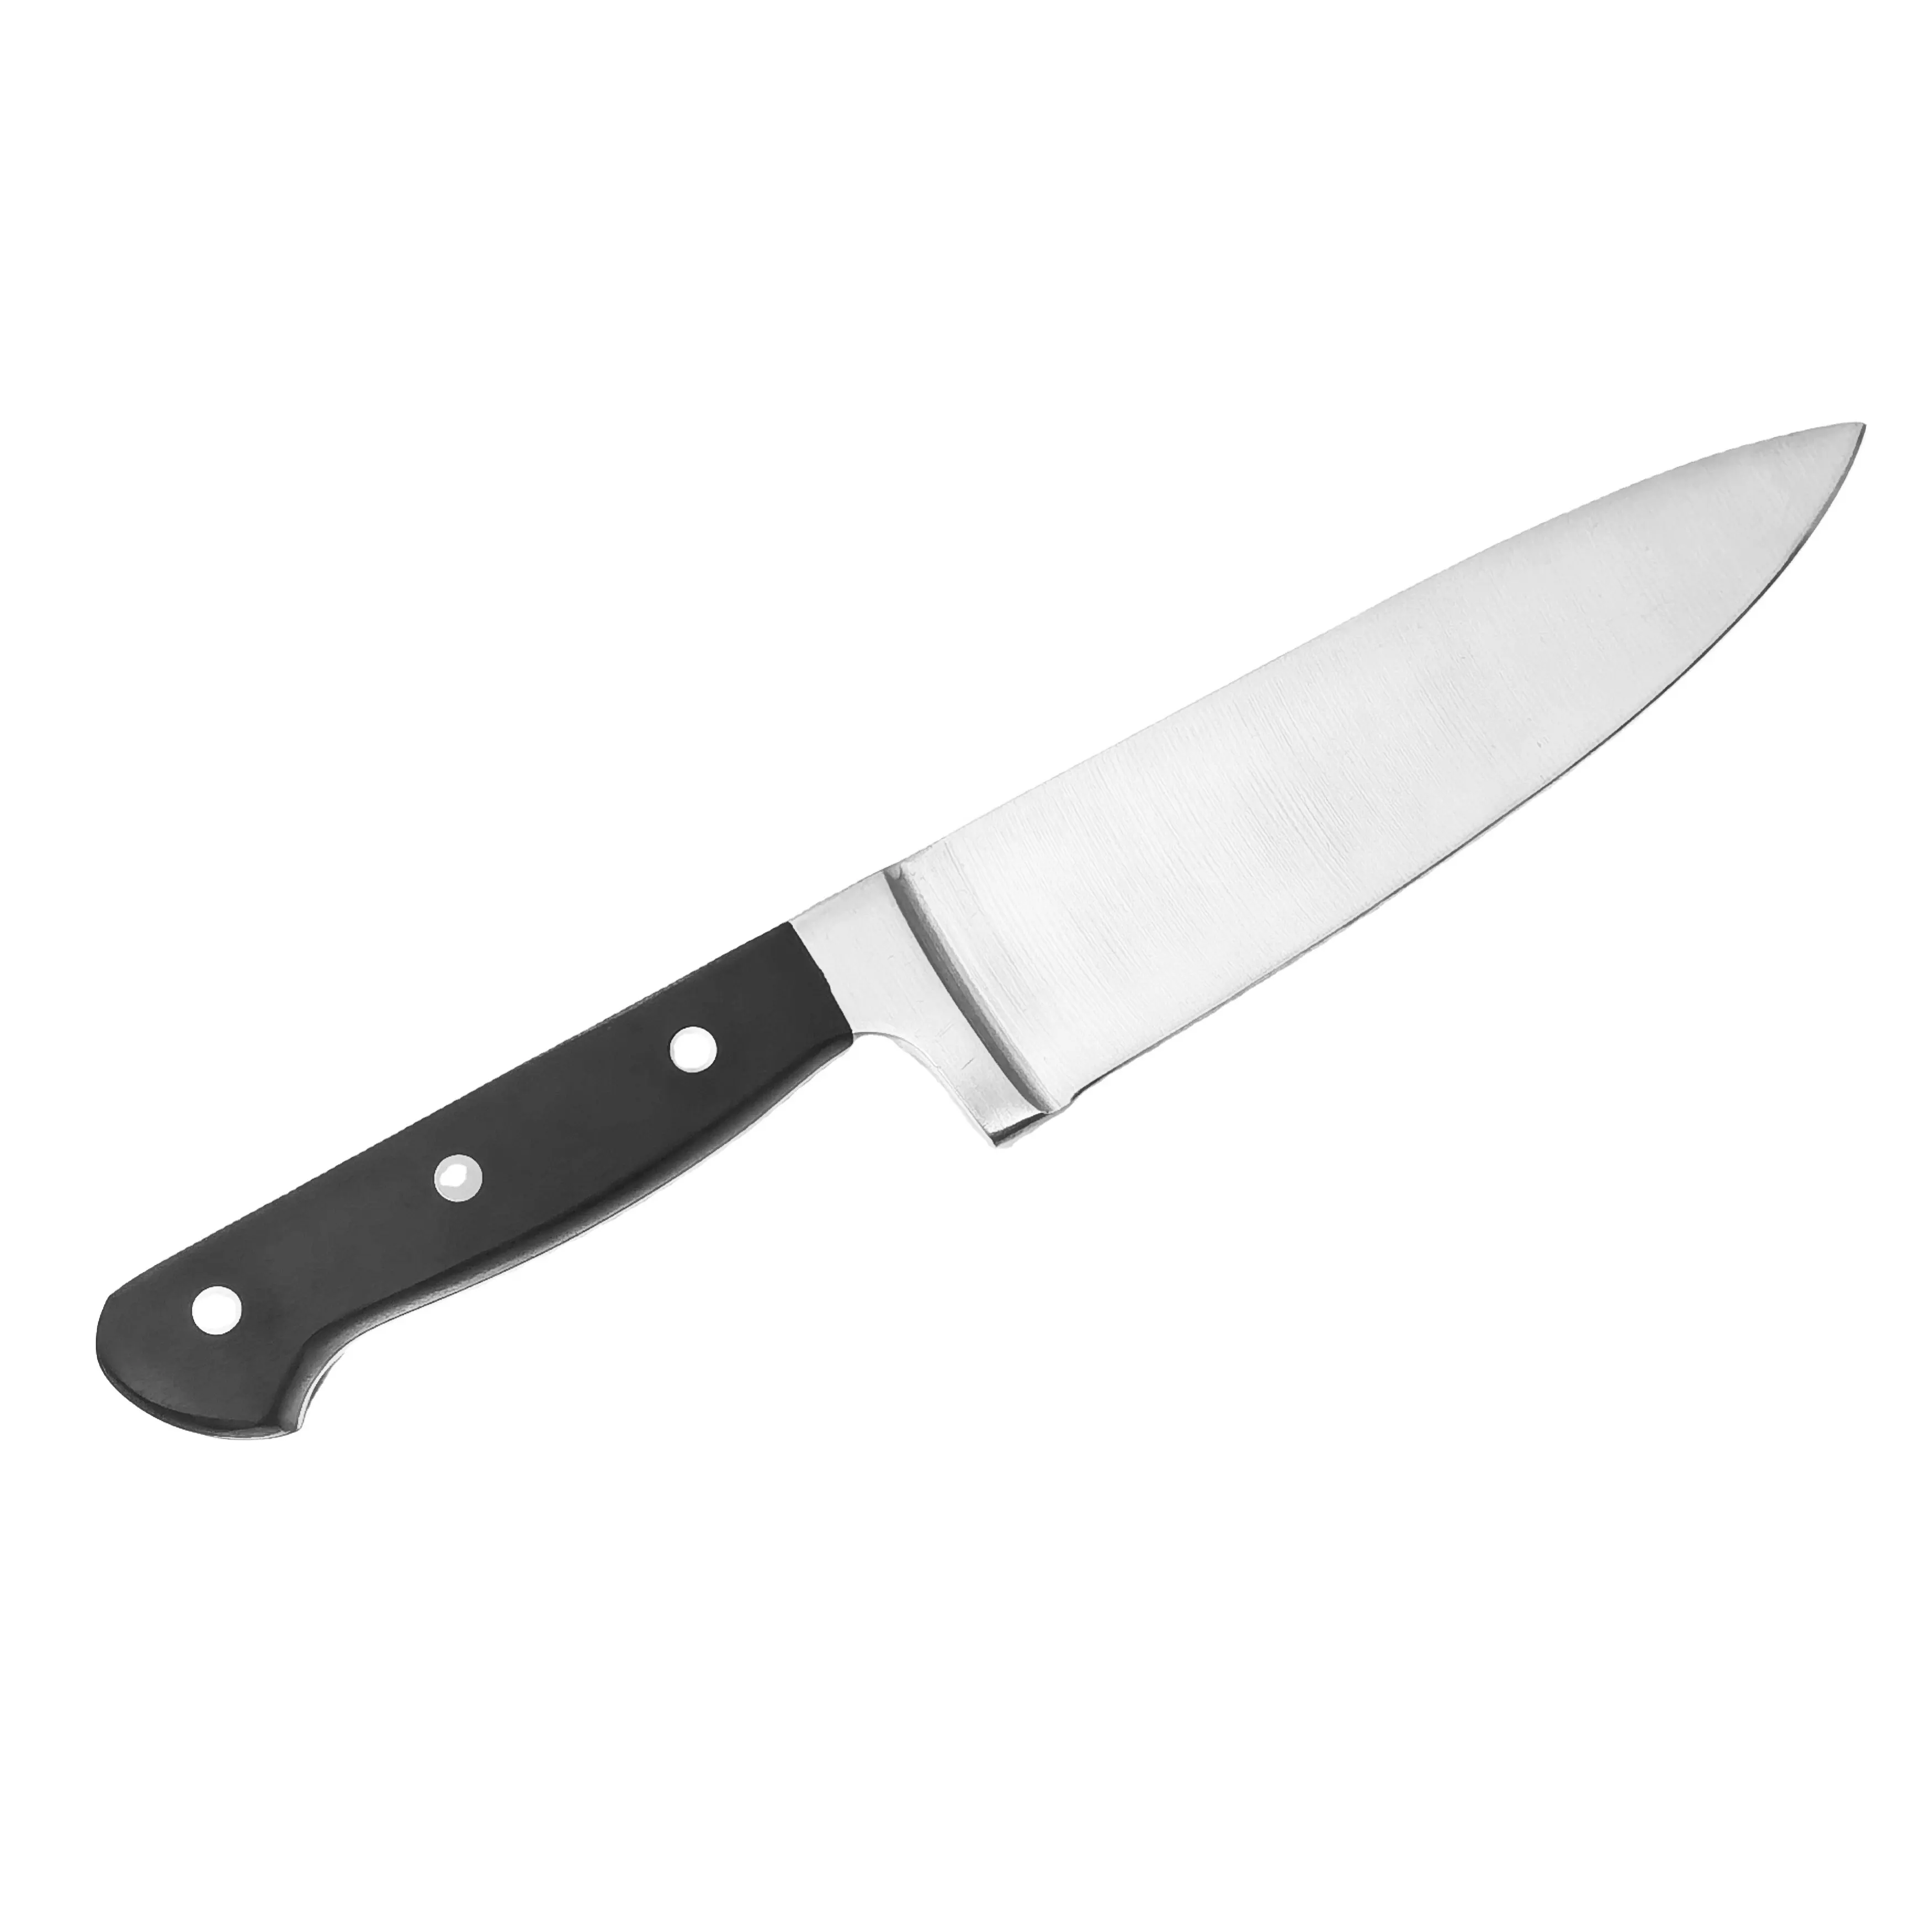 Yüksek kalite profesyonel 7 inç paslanmaz çelik dövme kolu mutfak şef bıçağı